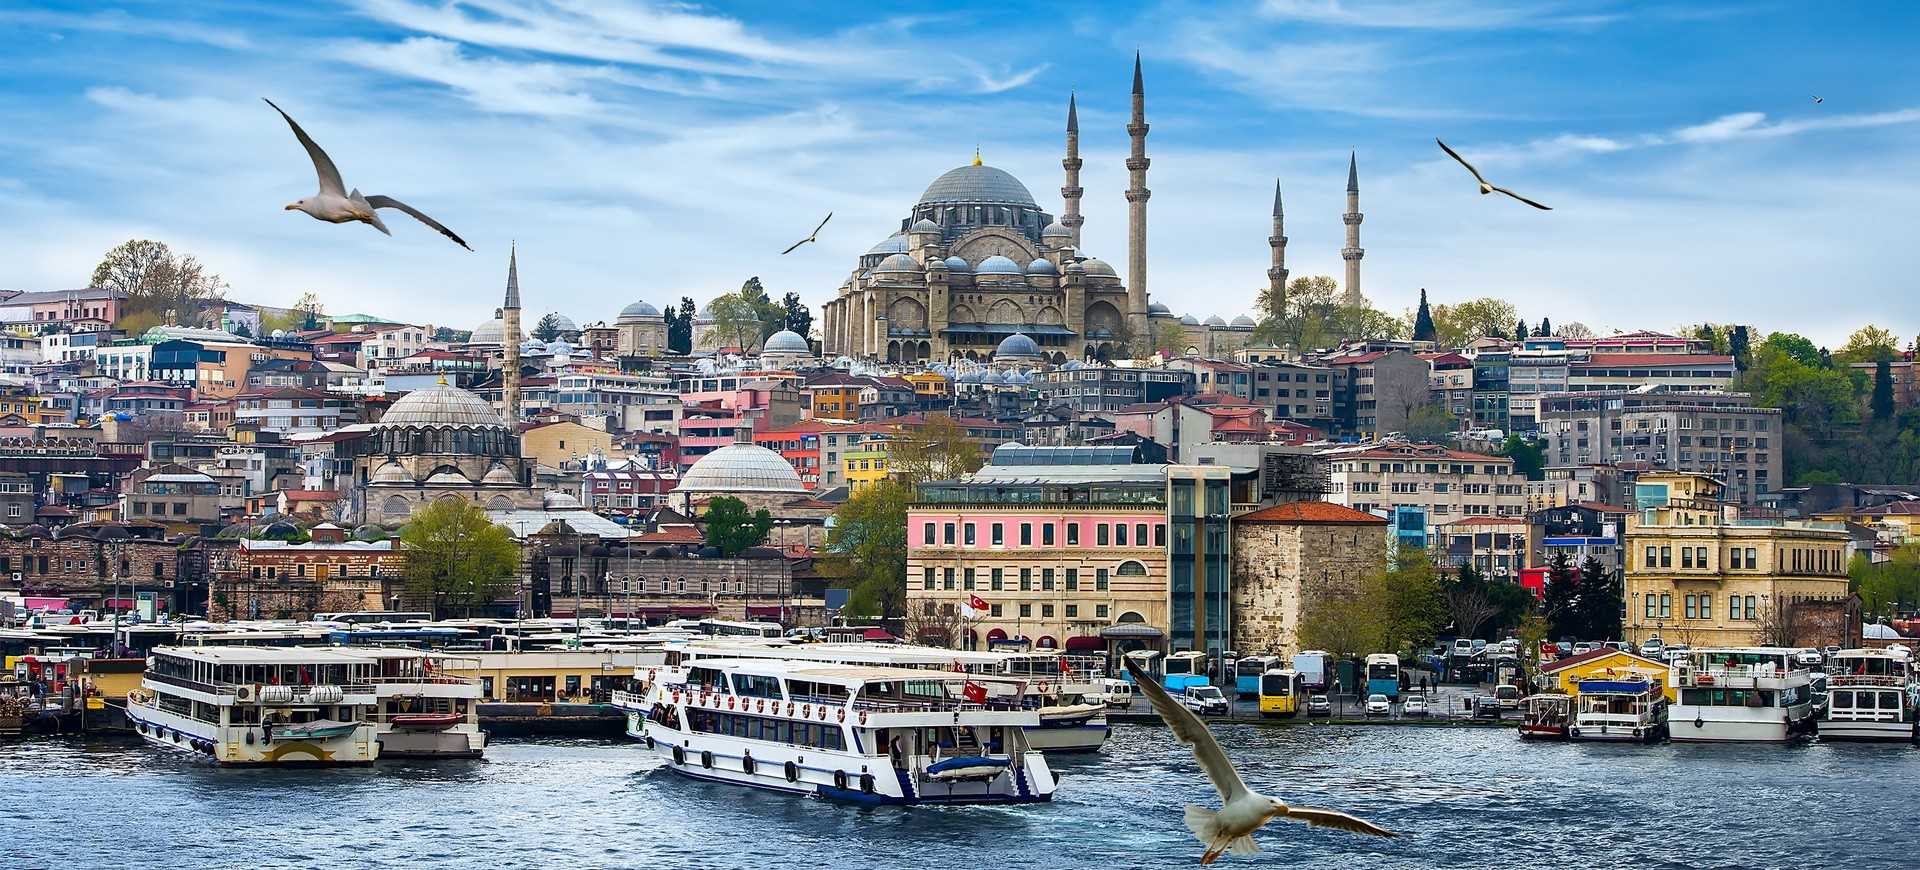 Turquie Istanbul au bord du Bosphore